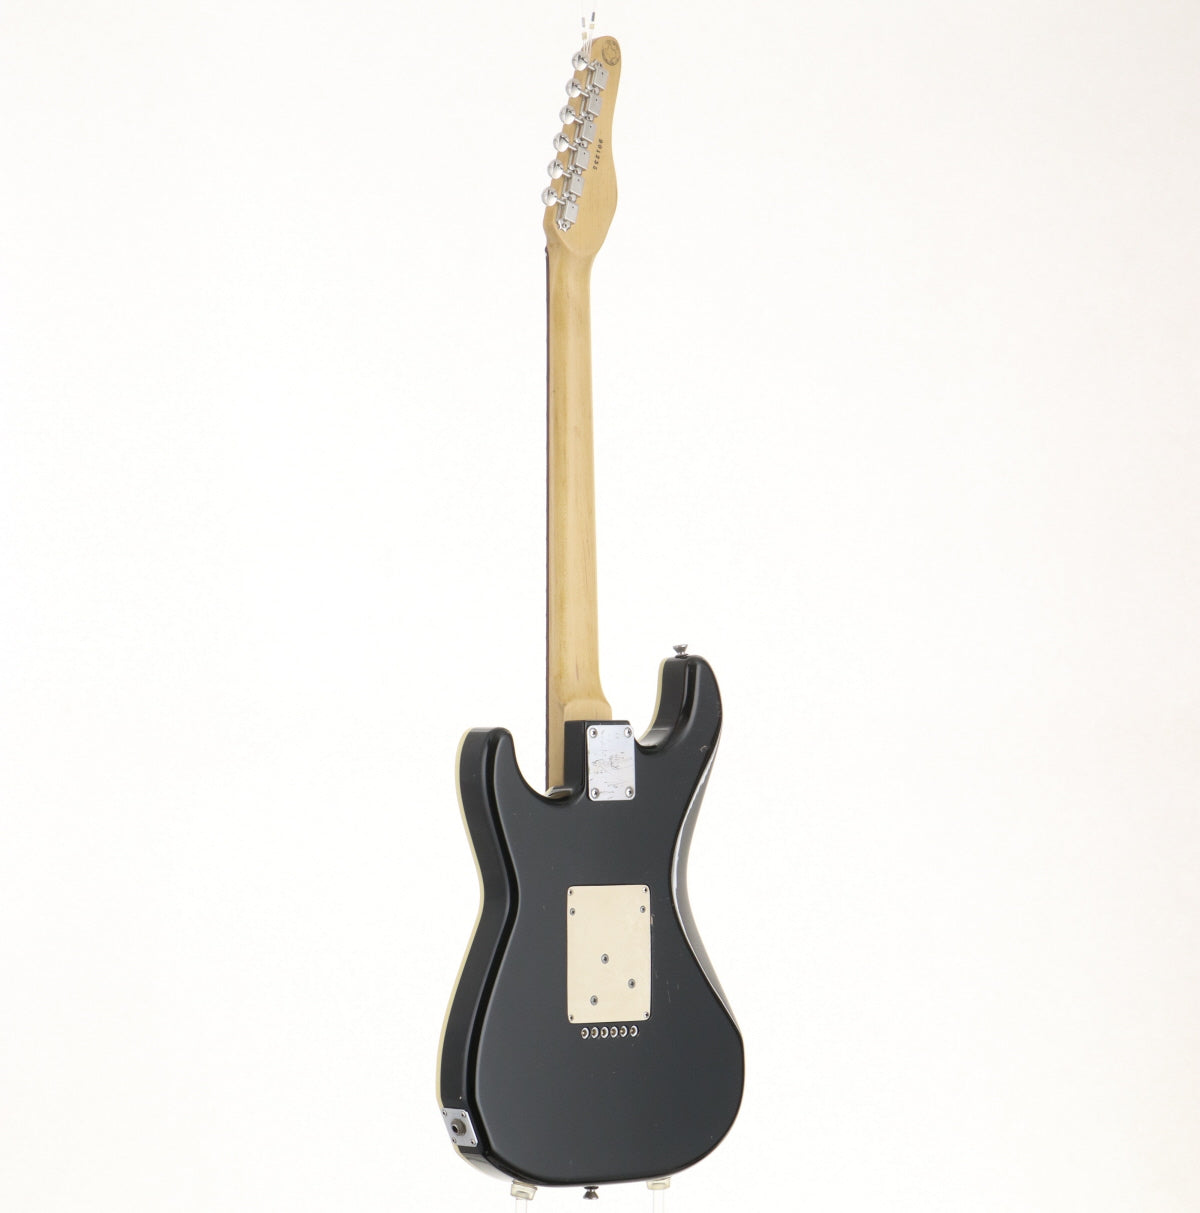 [SN 901255] USED Robin Guitars / Ranger Custom [09]